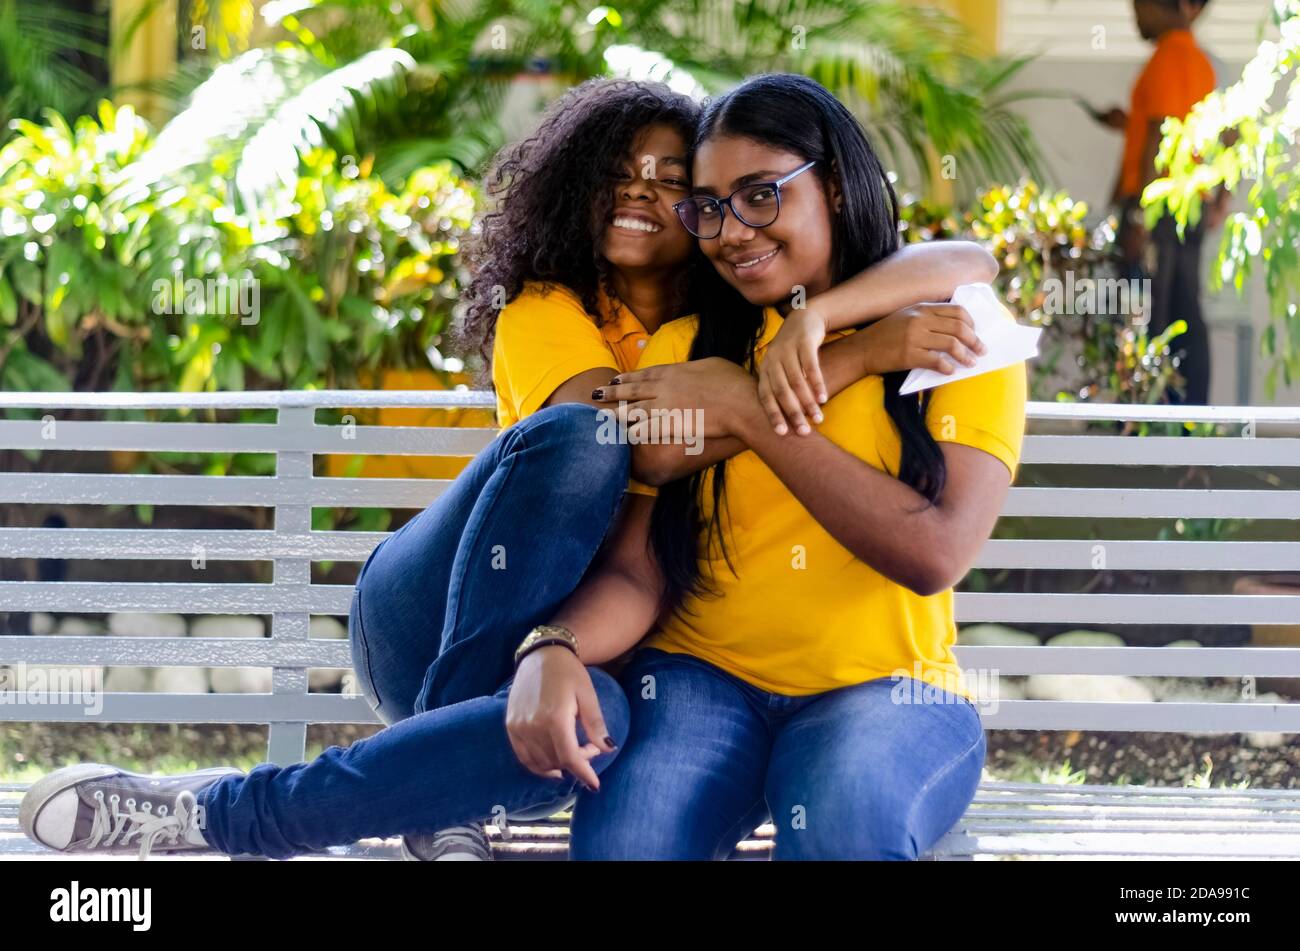 deux femmes noires de 20-25 ans avec des cheveux bouclés heureux dans le parc, assis sur un banc Banque D'Images